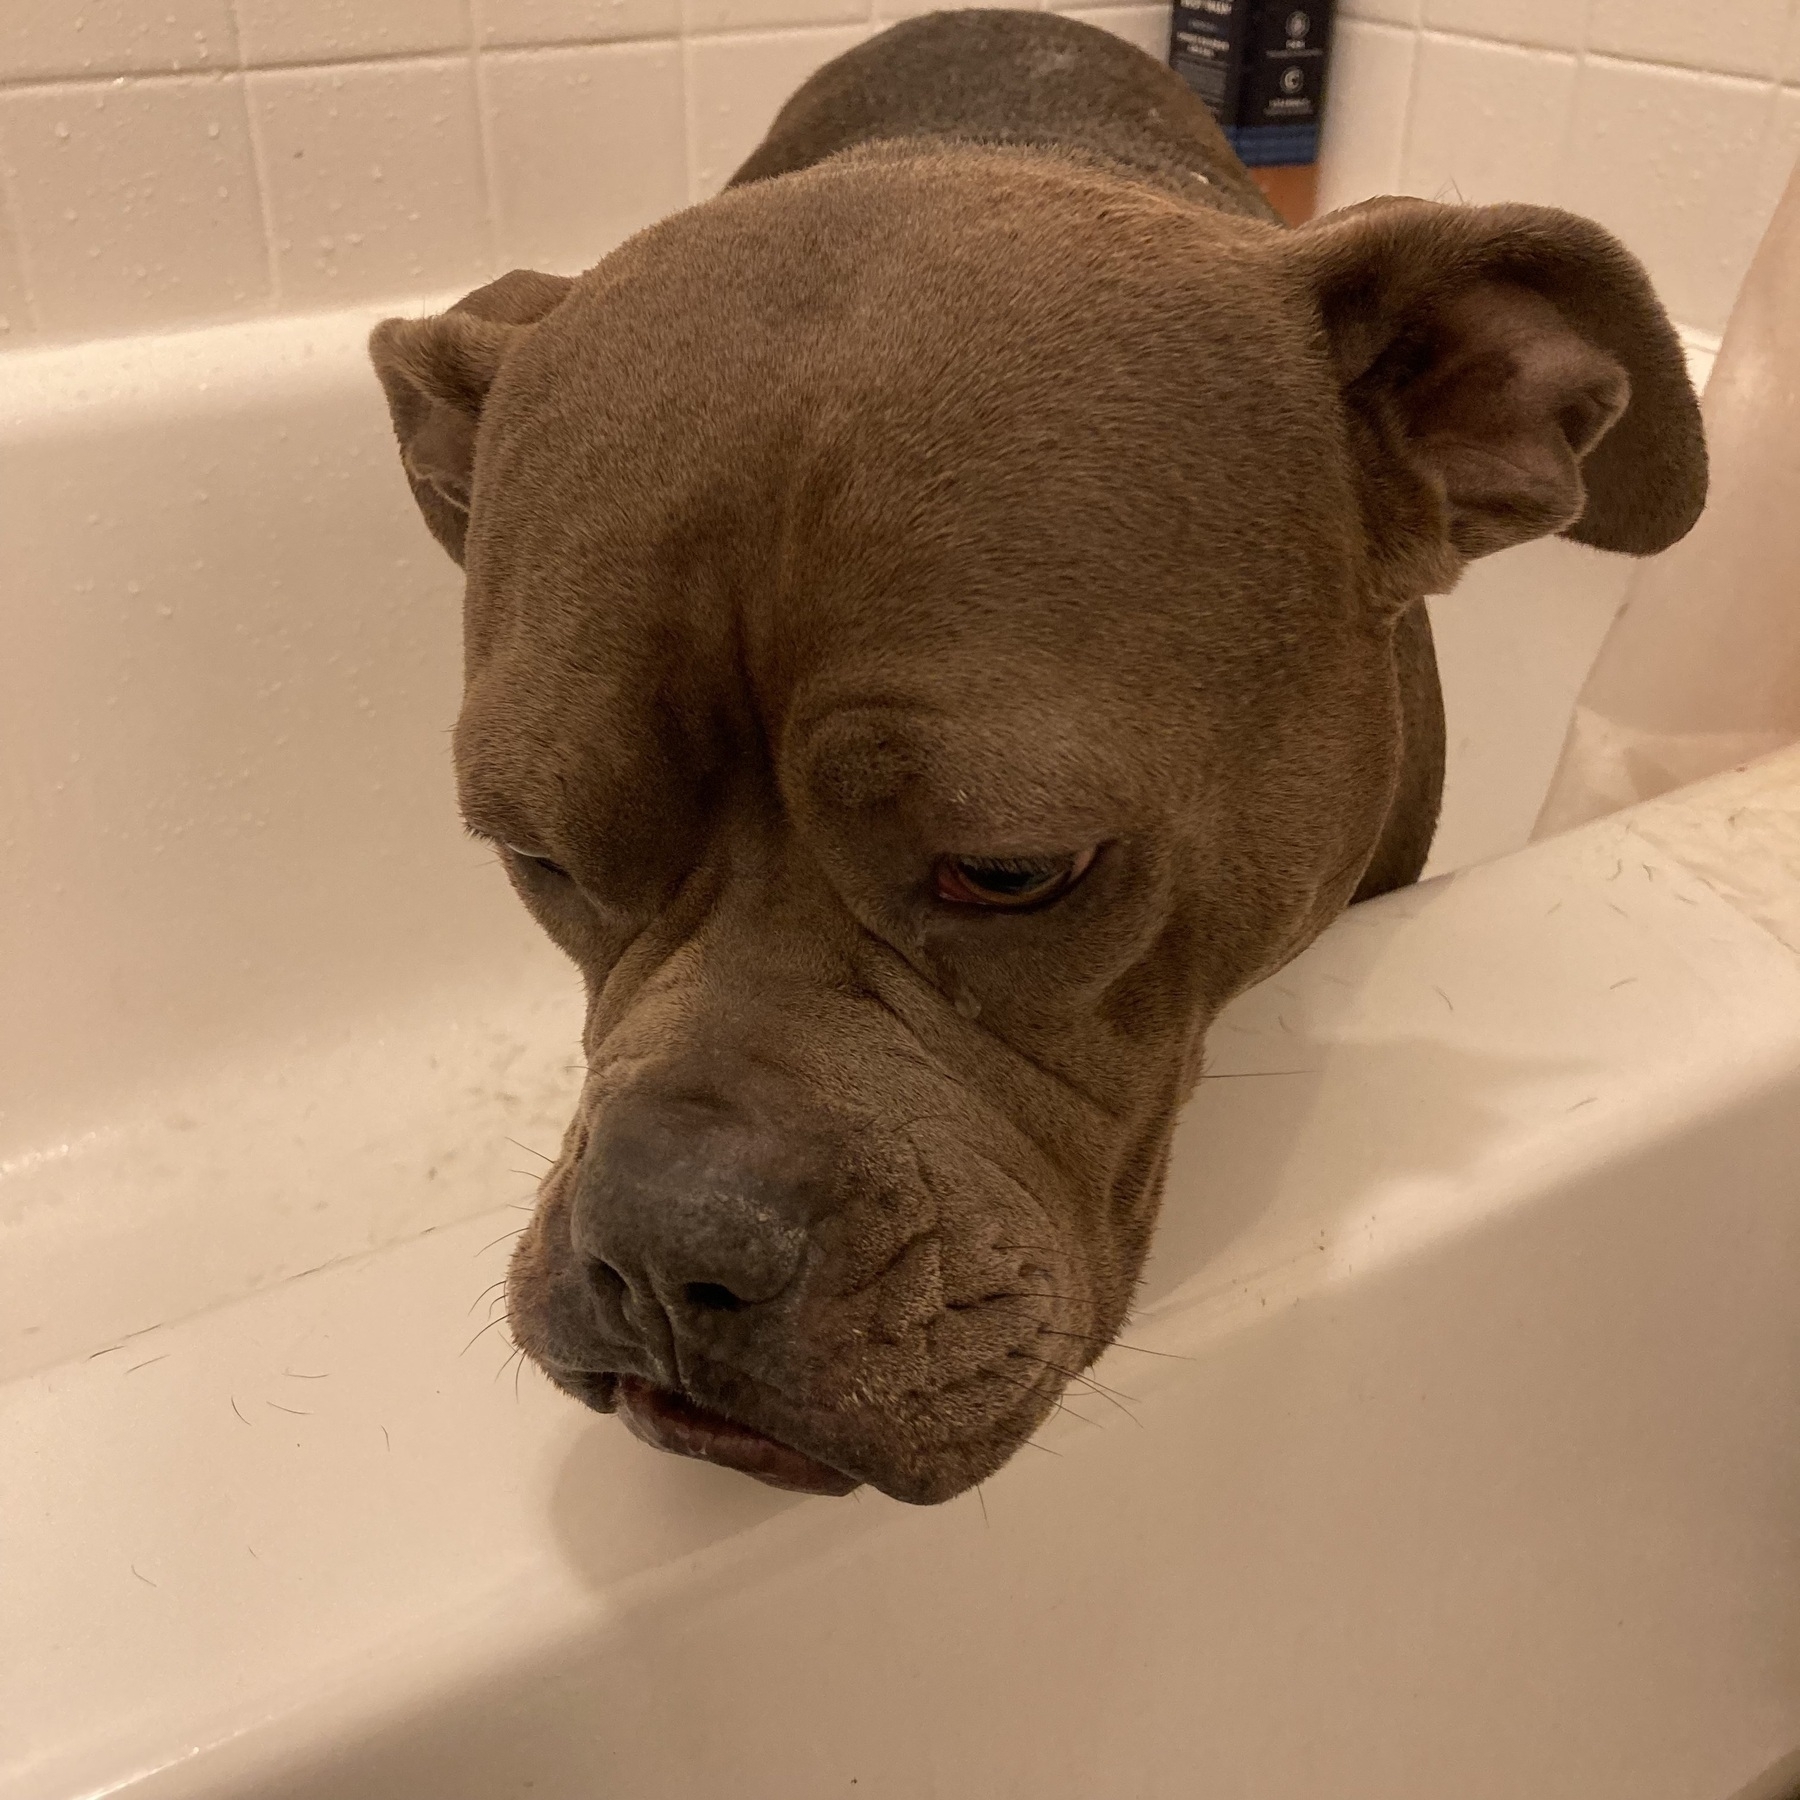 American pit bull looking sad in a bathtub. 